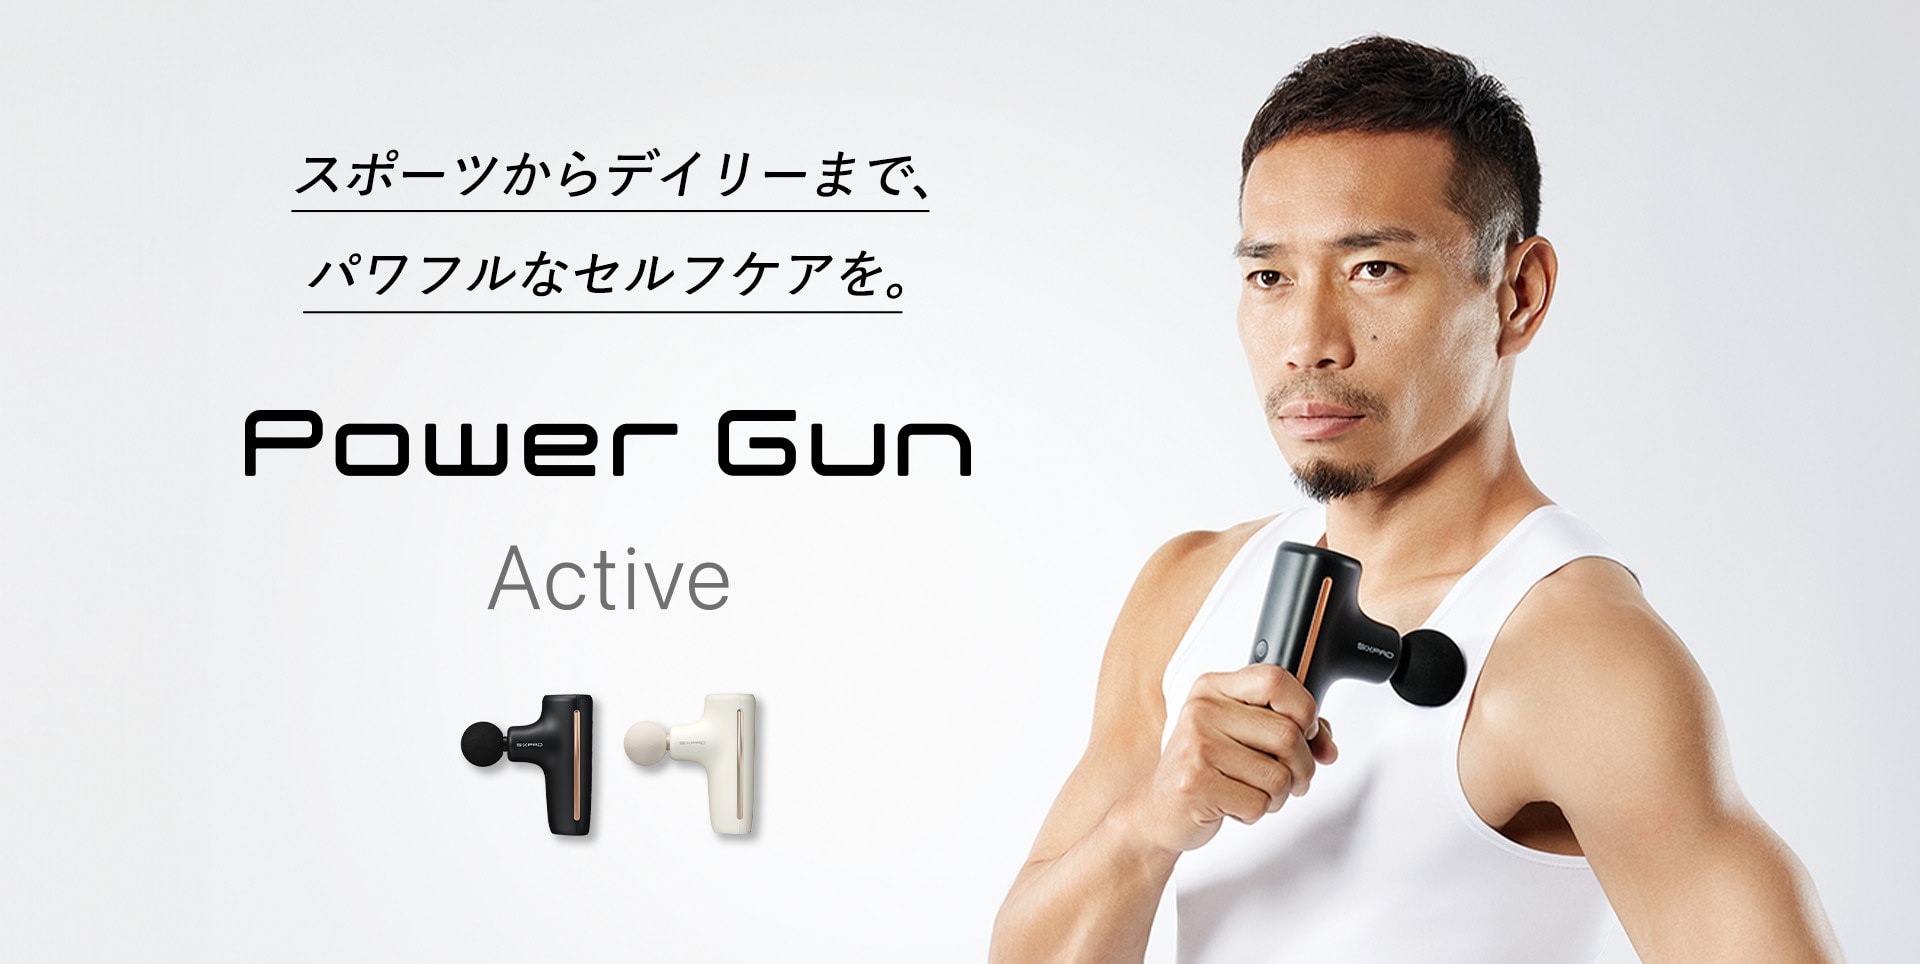 Power gun active